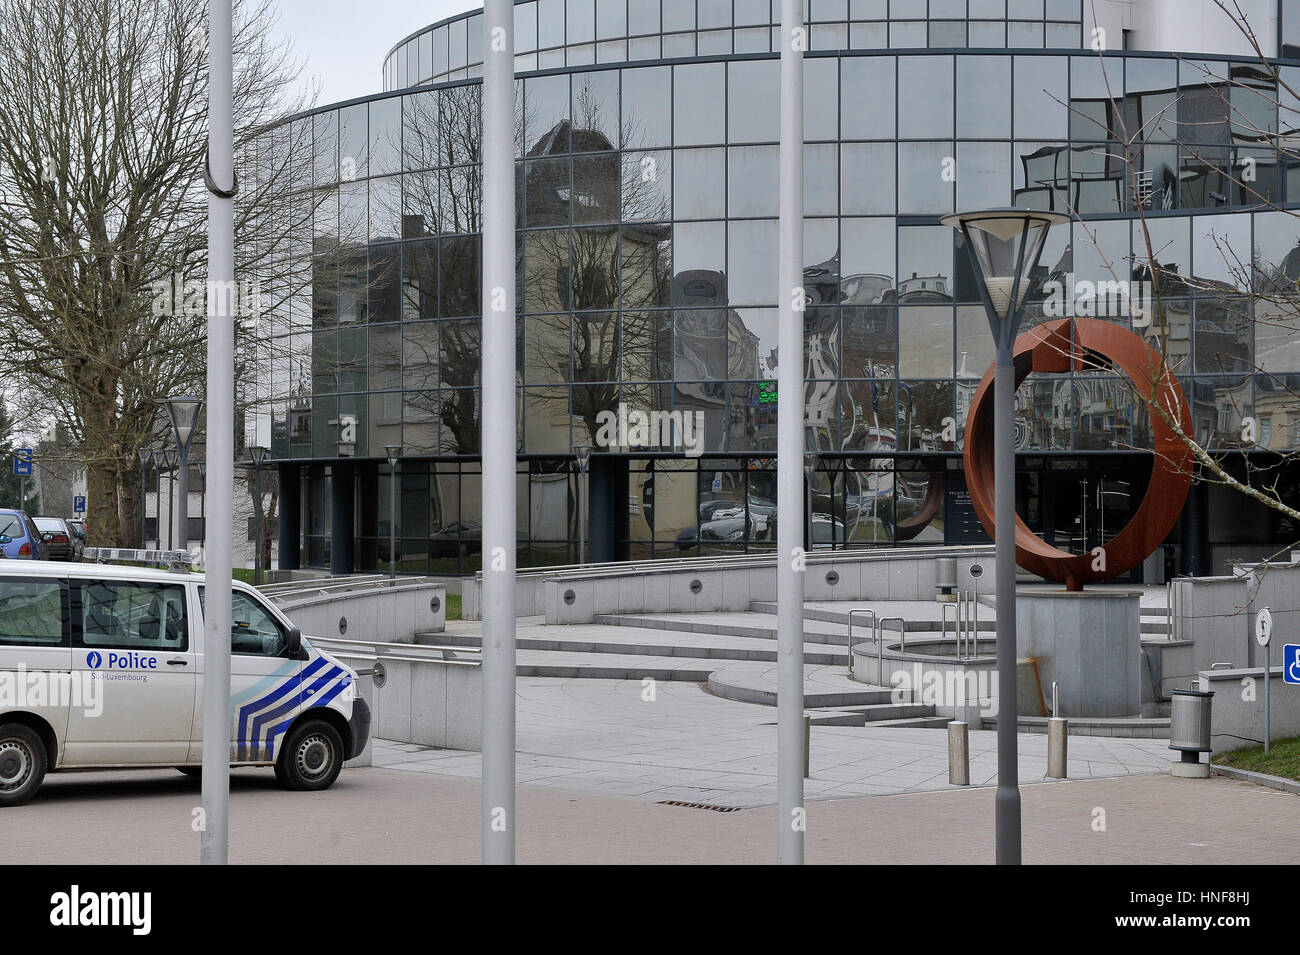 Belgique, Arlon 18.03.2011. La Cour de justice de Luxembourg, Palais de Justice d'Arlon. Banque D'Images